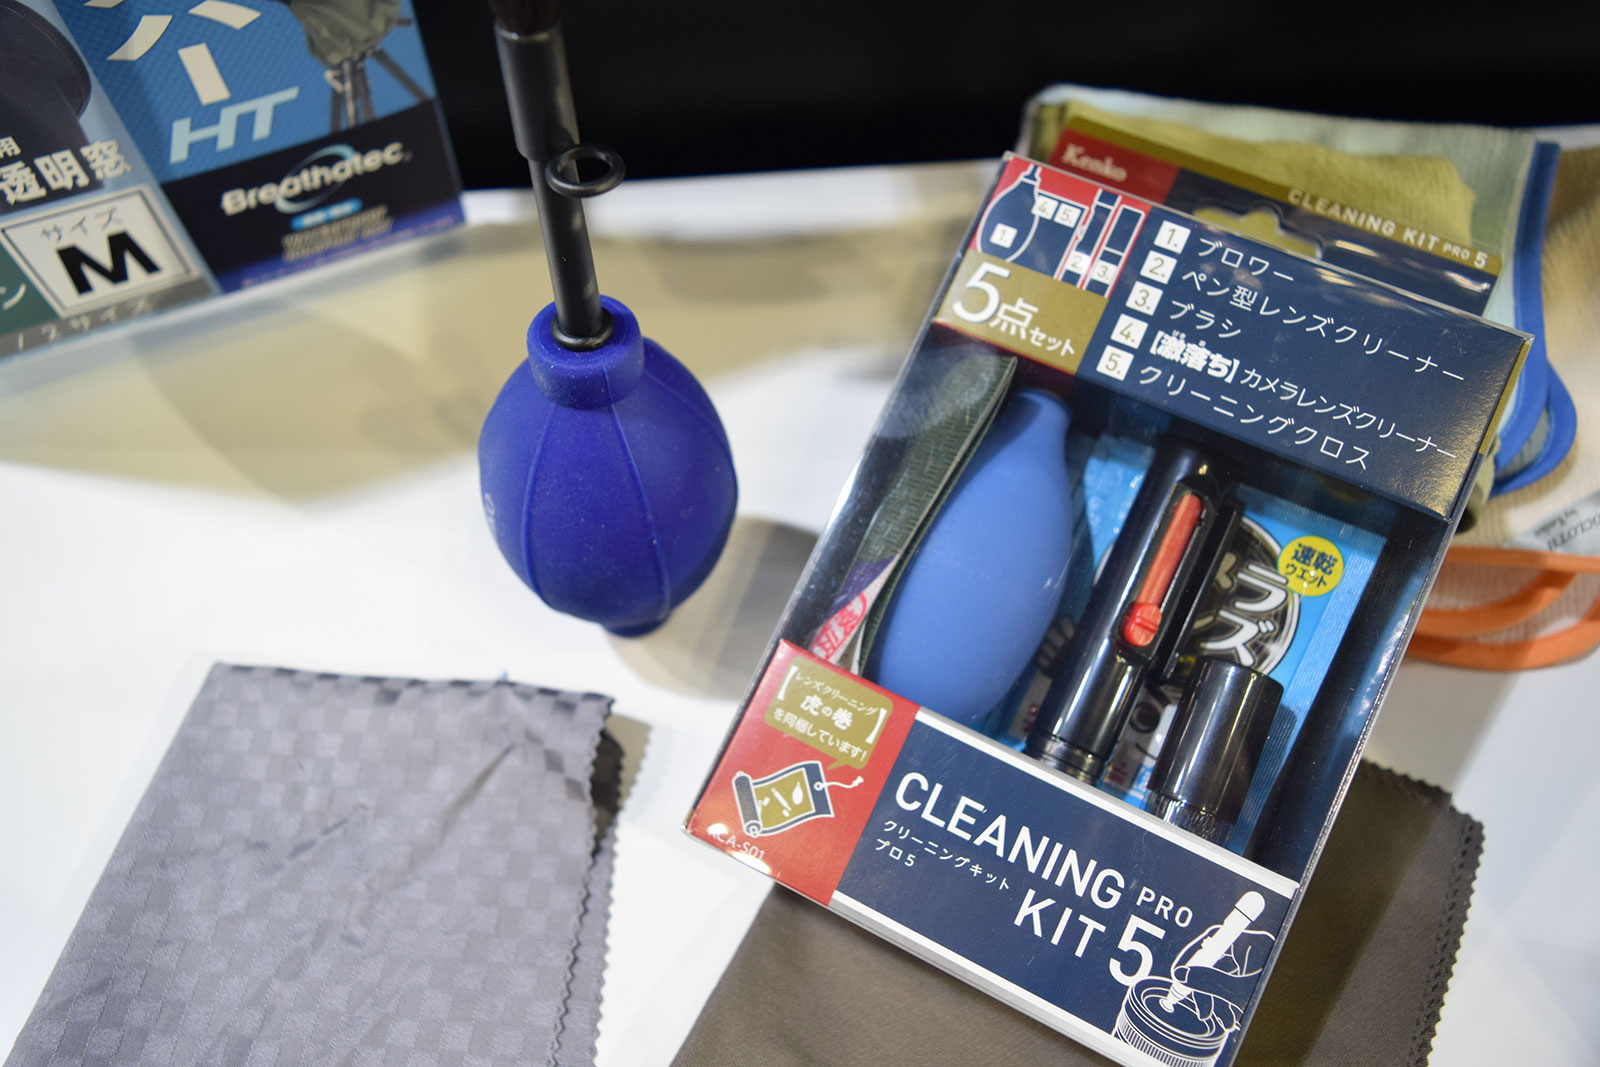 Kenko Cleaning Kit PRO 5